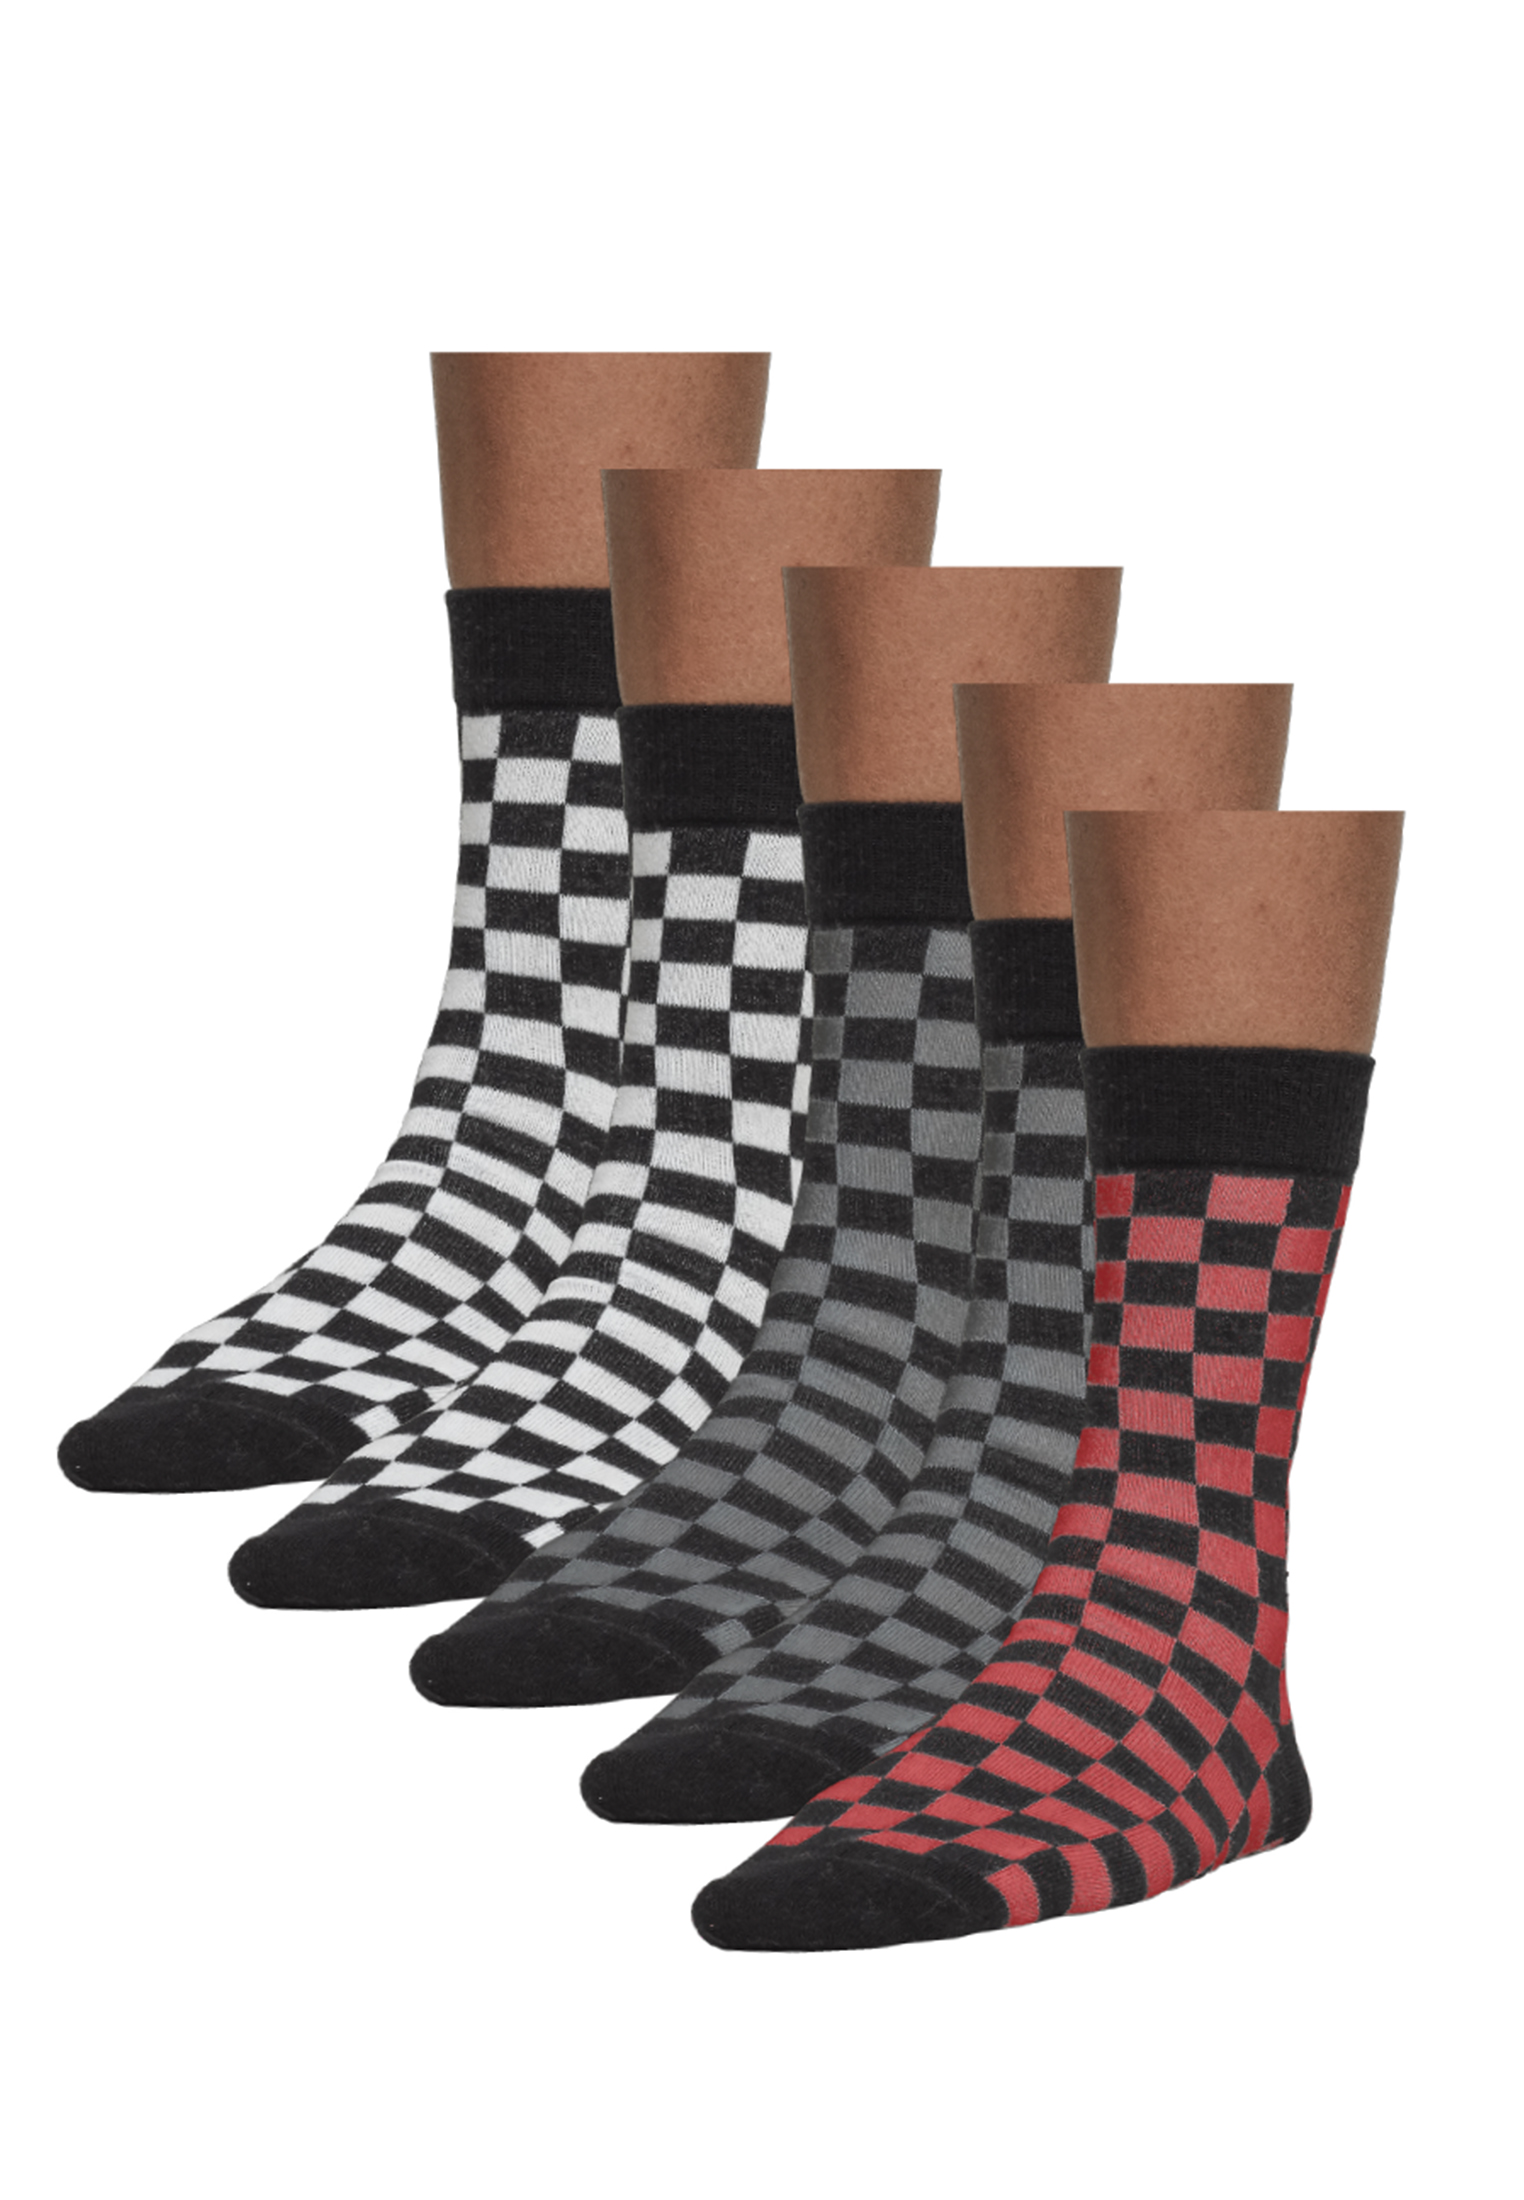 Socken Check Socks 5-Pack in Farbe blk/h.grey/wht